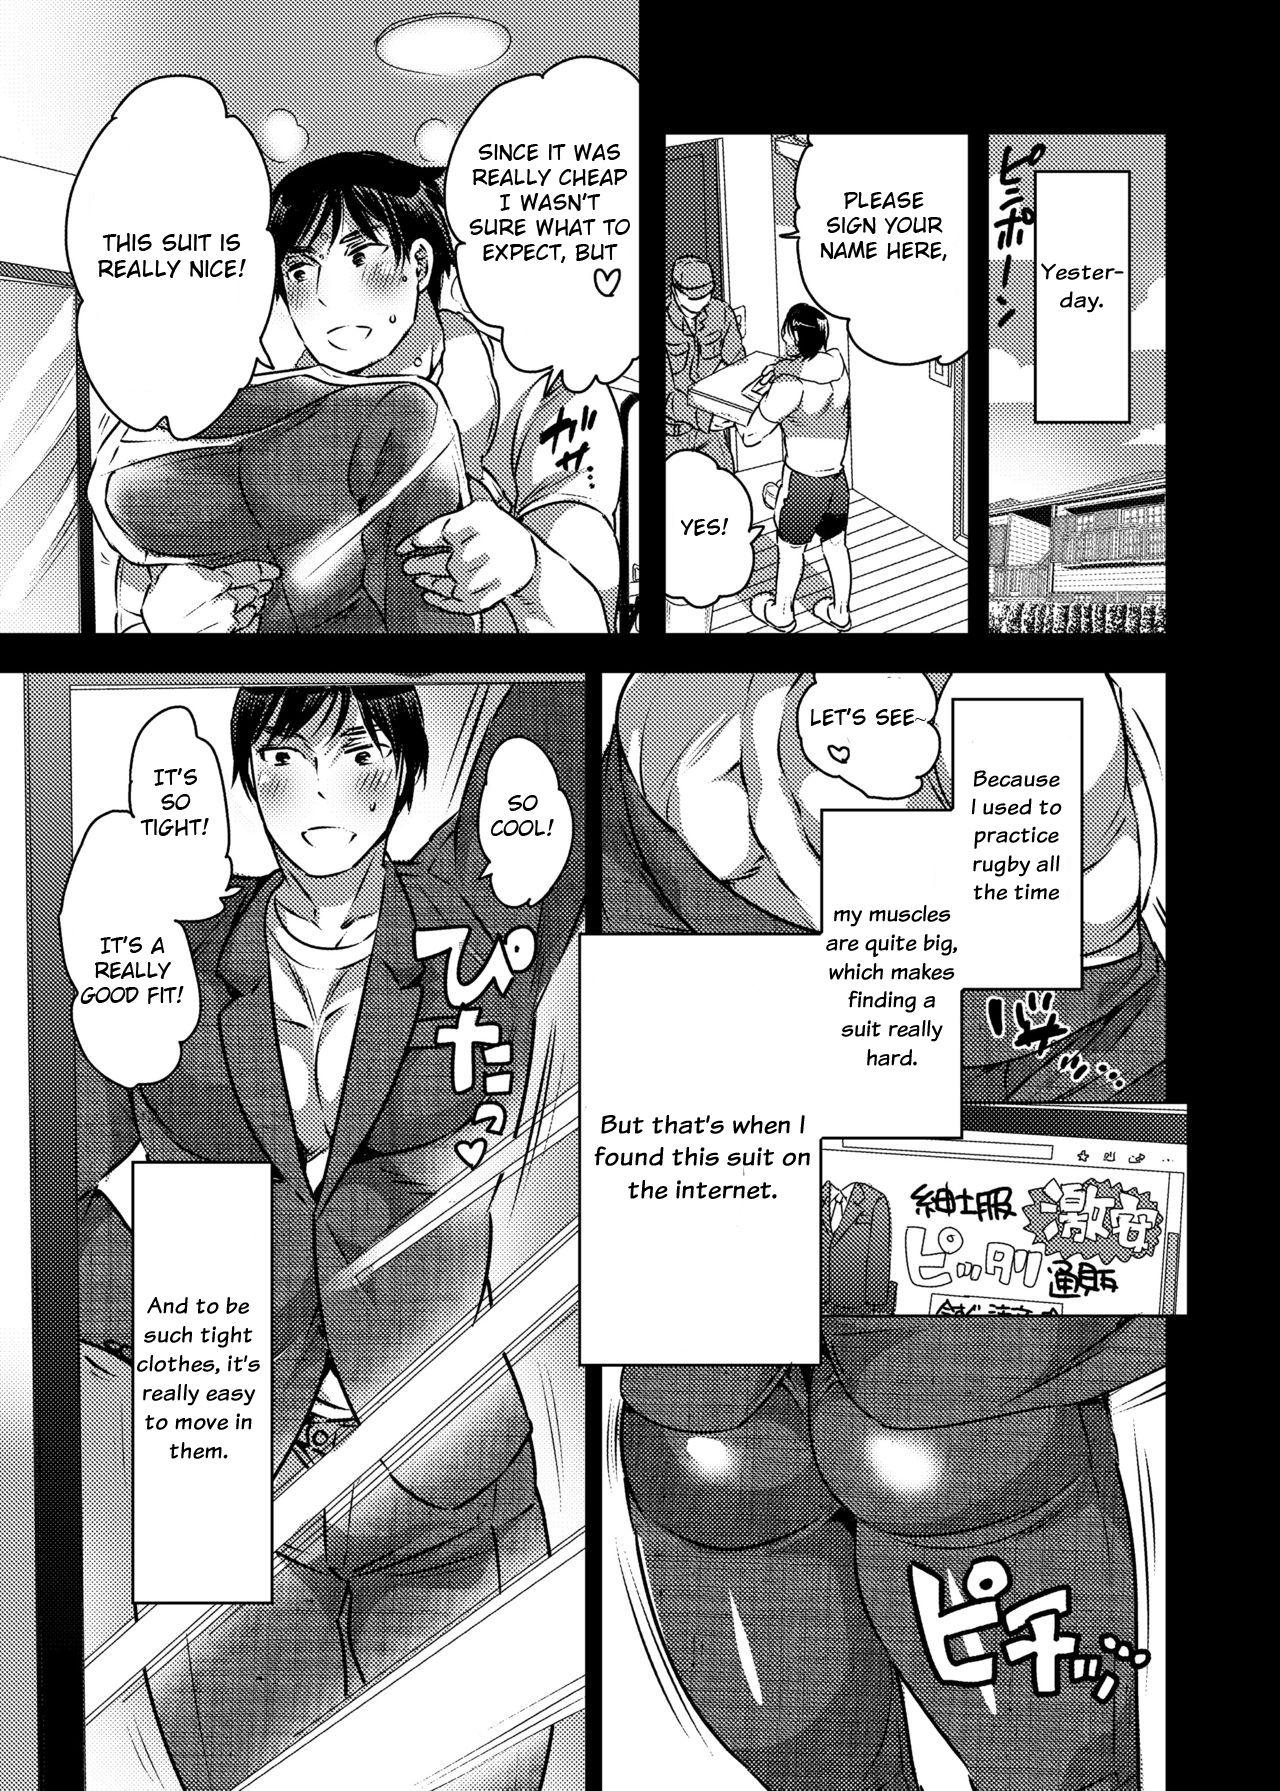 Shy Shokushu o Matou - Original 3way - Page 4